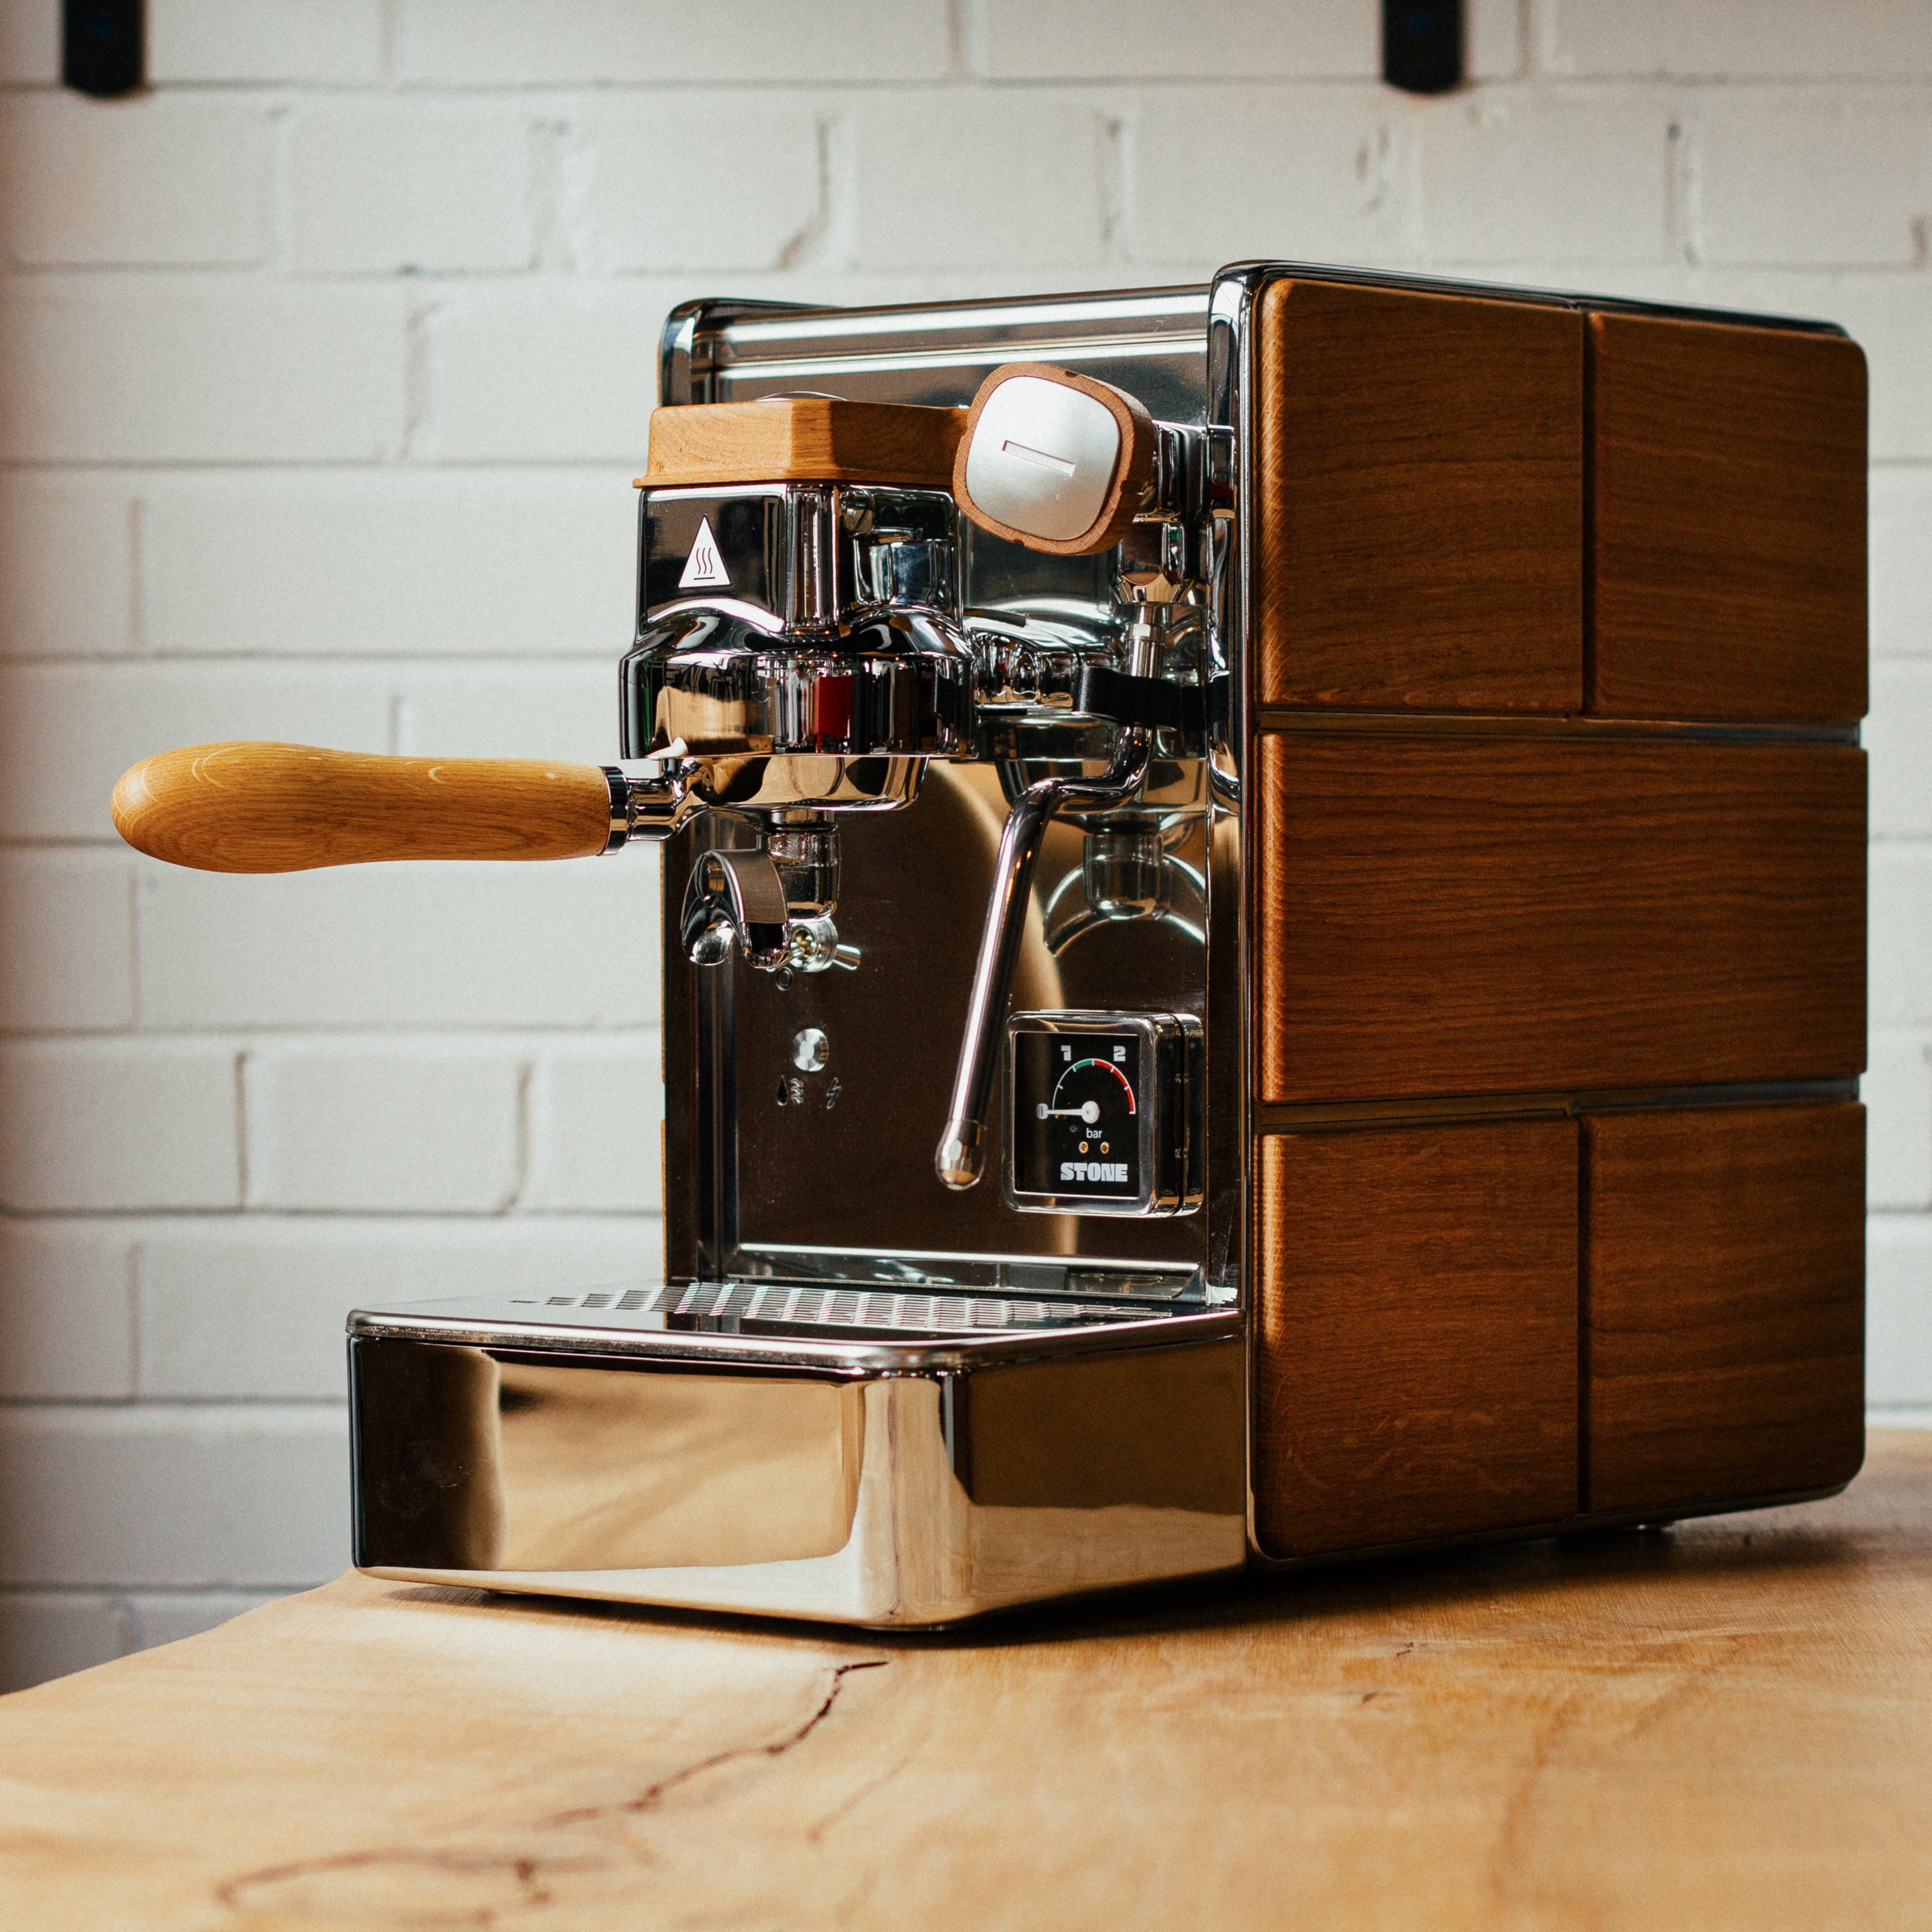 Cafetière Expresso - Achat Machine à café